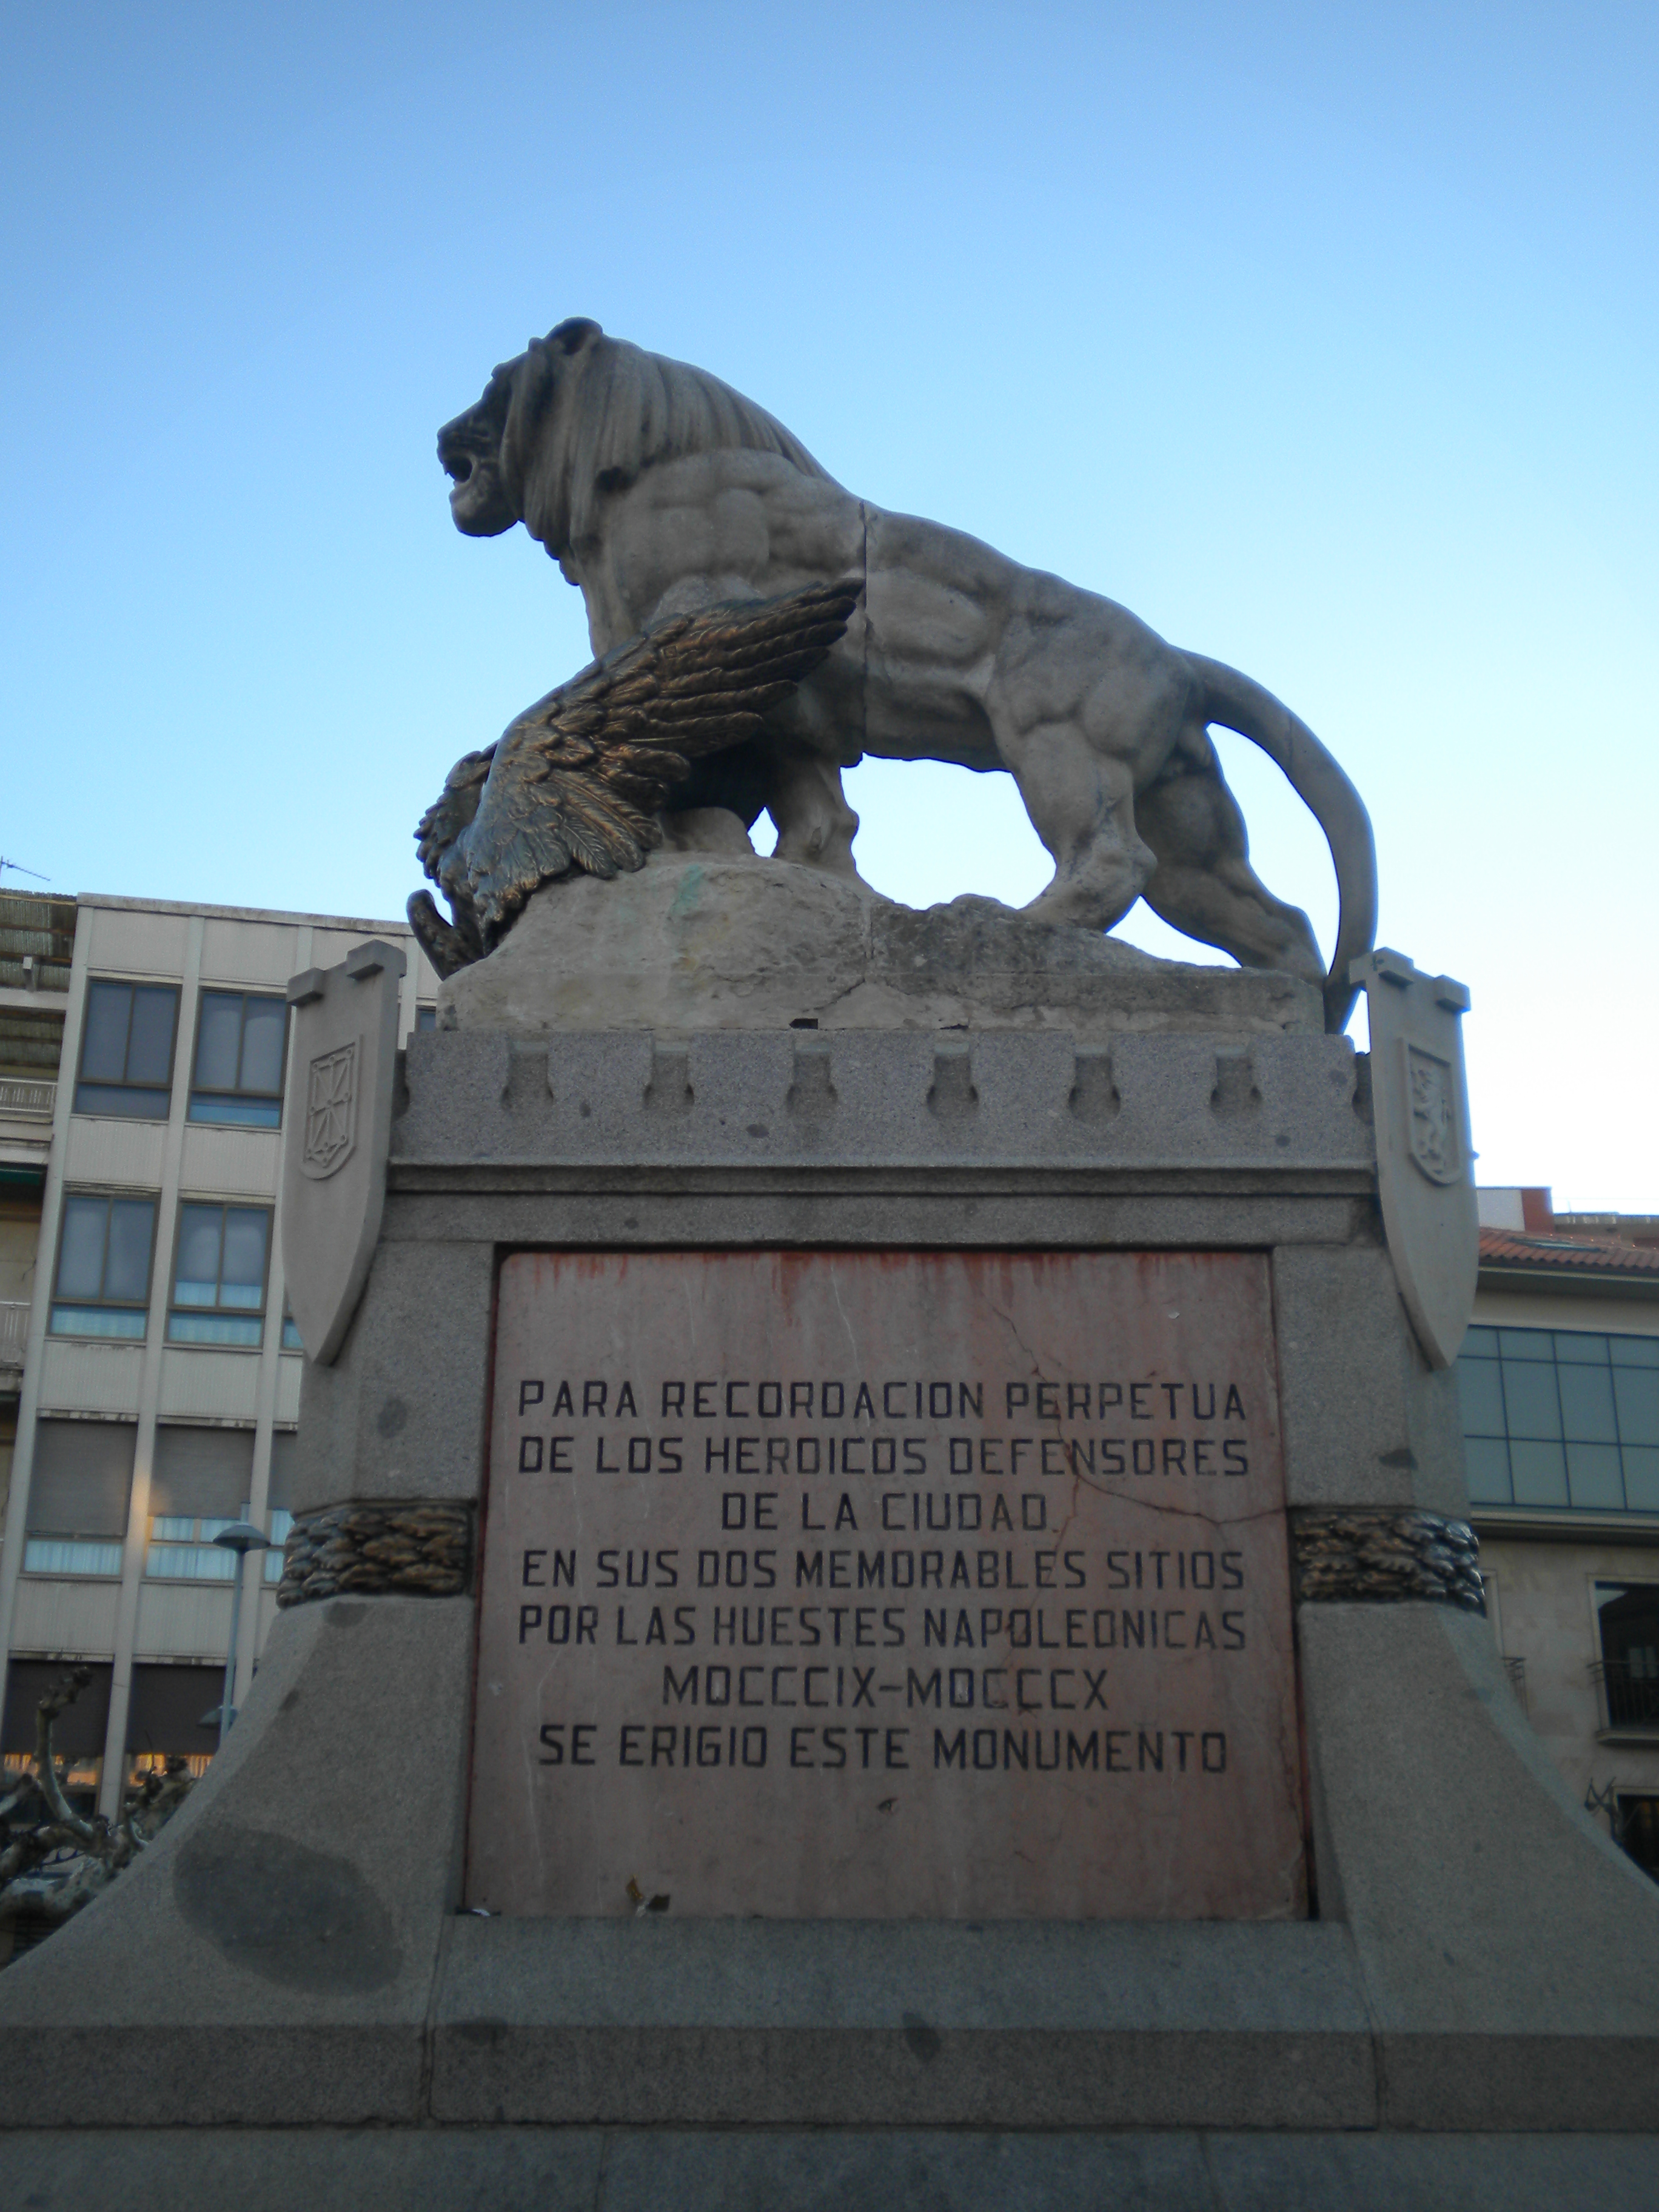 Monumento a los Sitios de Astorga (parte lateral)